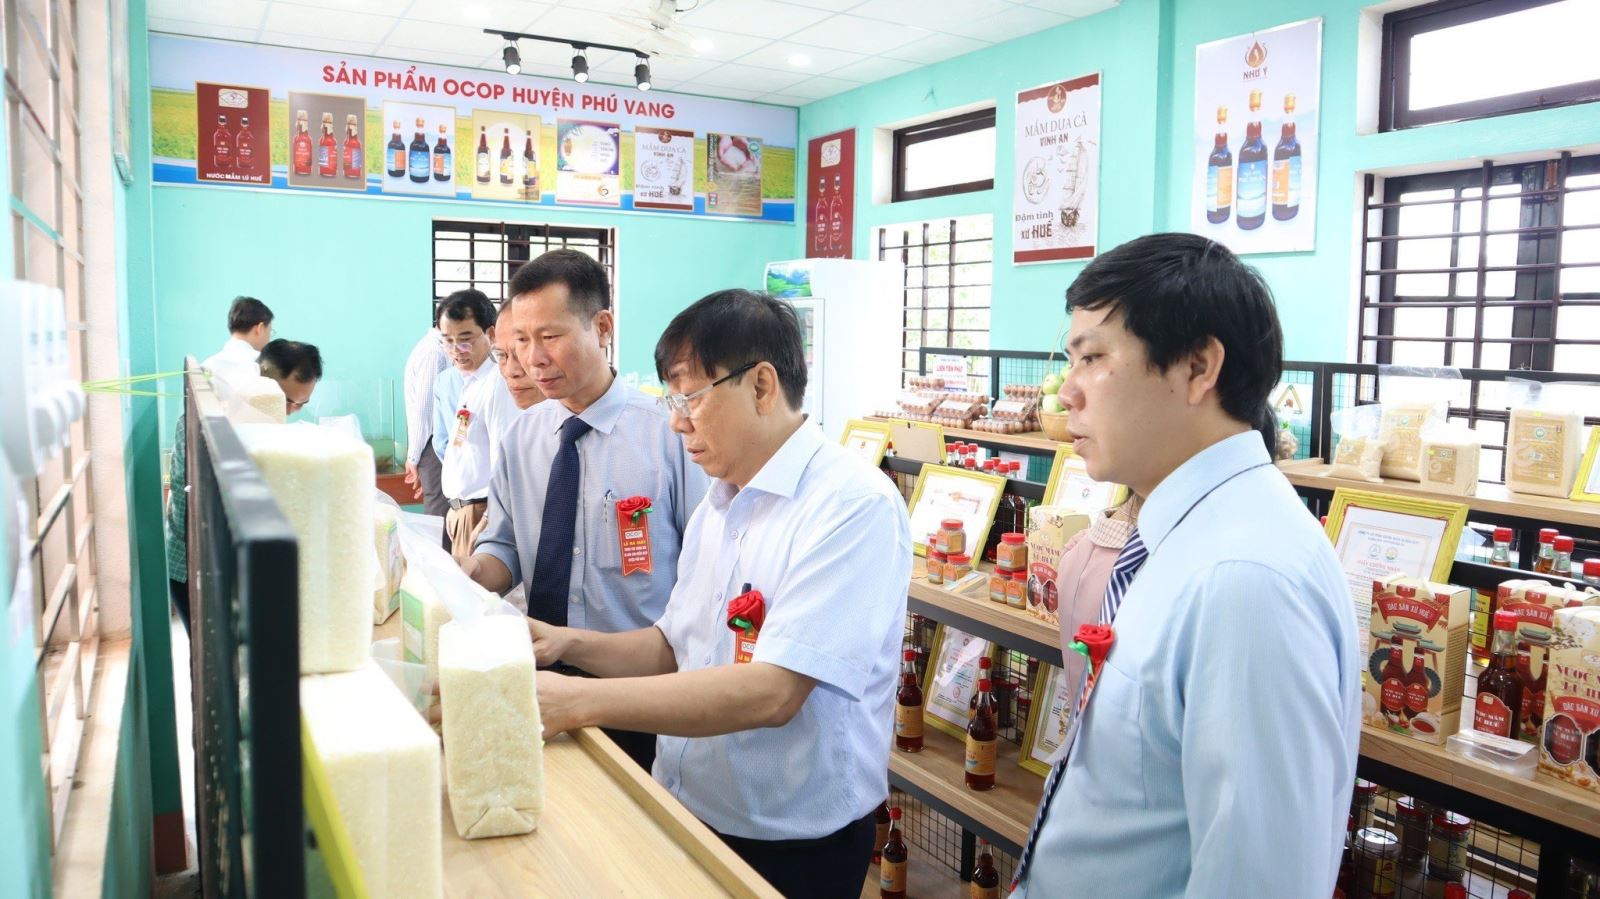 Ông Nguyễn Văn Chính, Phó Chủ tịch UBND huyện Phú Vang, Chủ tịch Hội đồng đánh giá đã đánh đề nghị các chủ thể tiếp tục nâng cao chất lượng, tăng cường quảng bá sản phẩm và phát triển thị trường tiêu thụ.